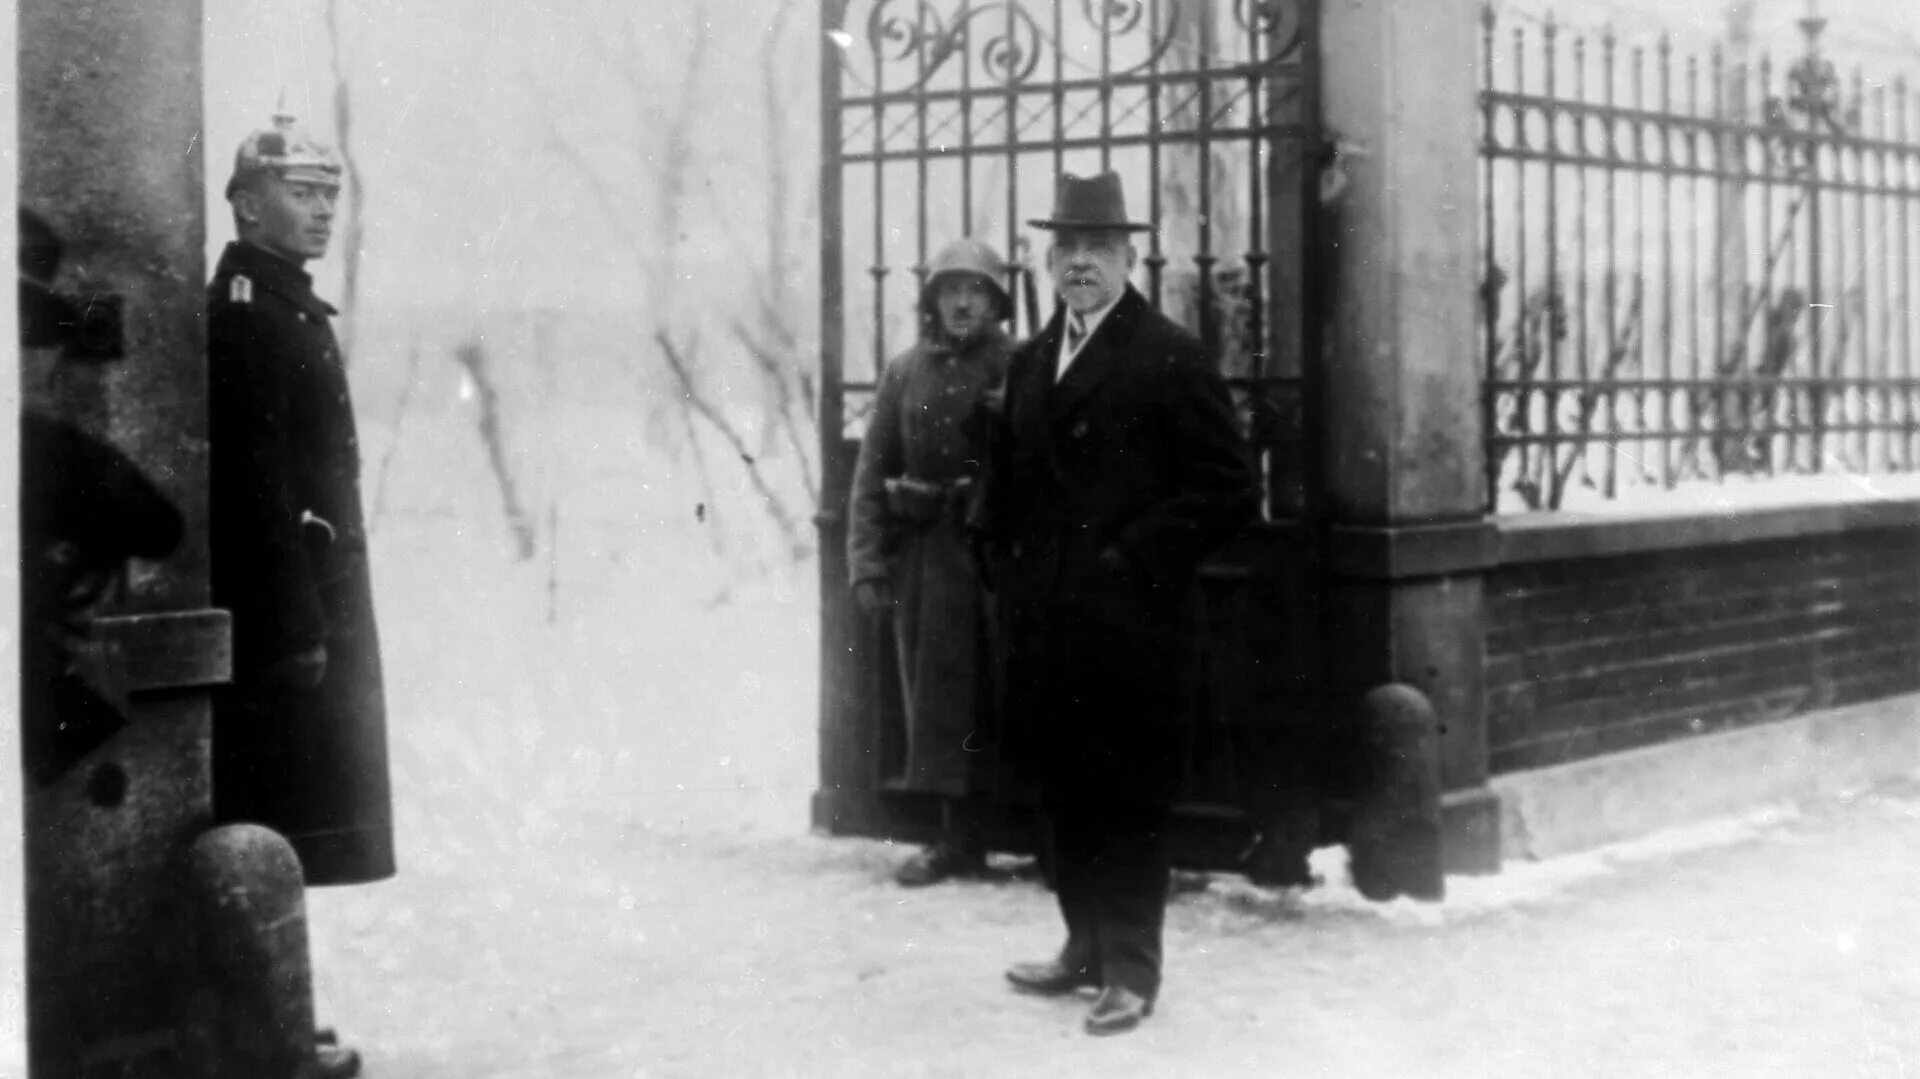 Что случилось с соколовым после войны. Мюнхен Германия 20 декабря 1924 год. Фото Гитлера 20 декабря 1924 года.